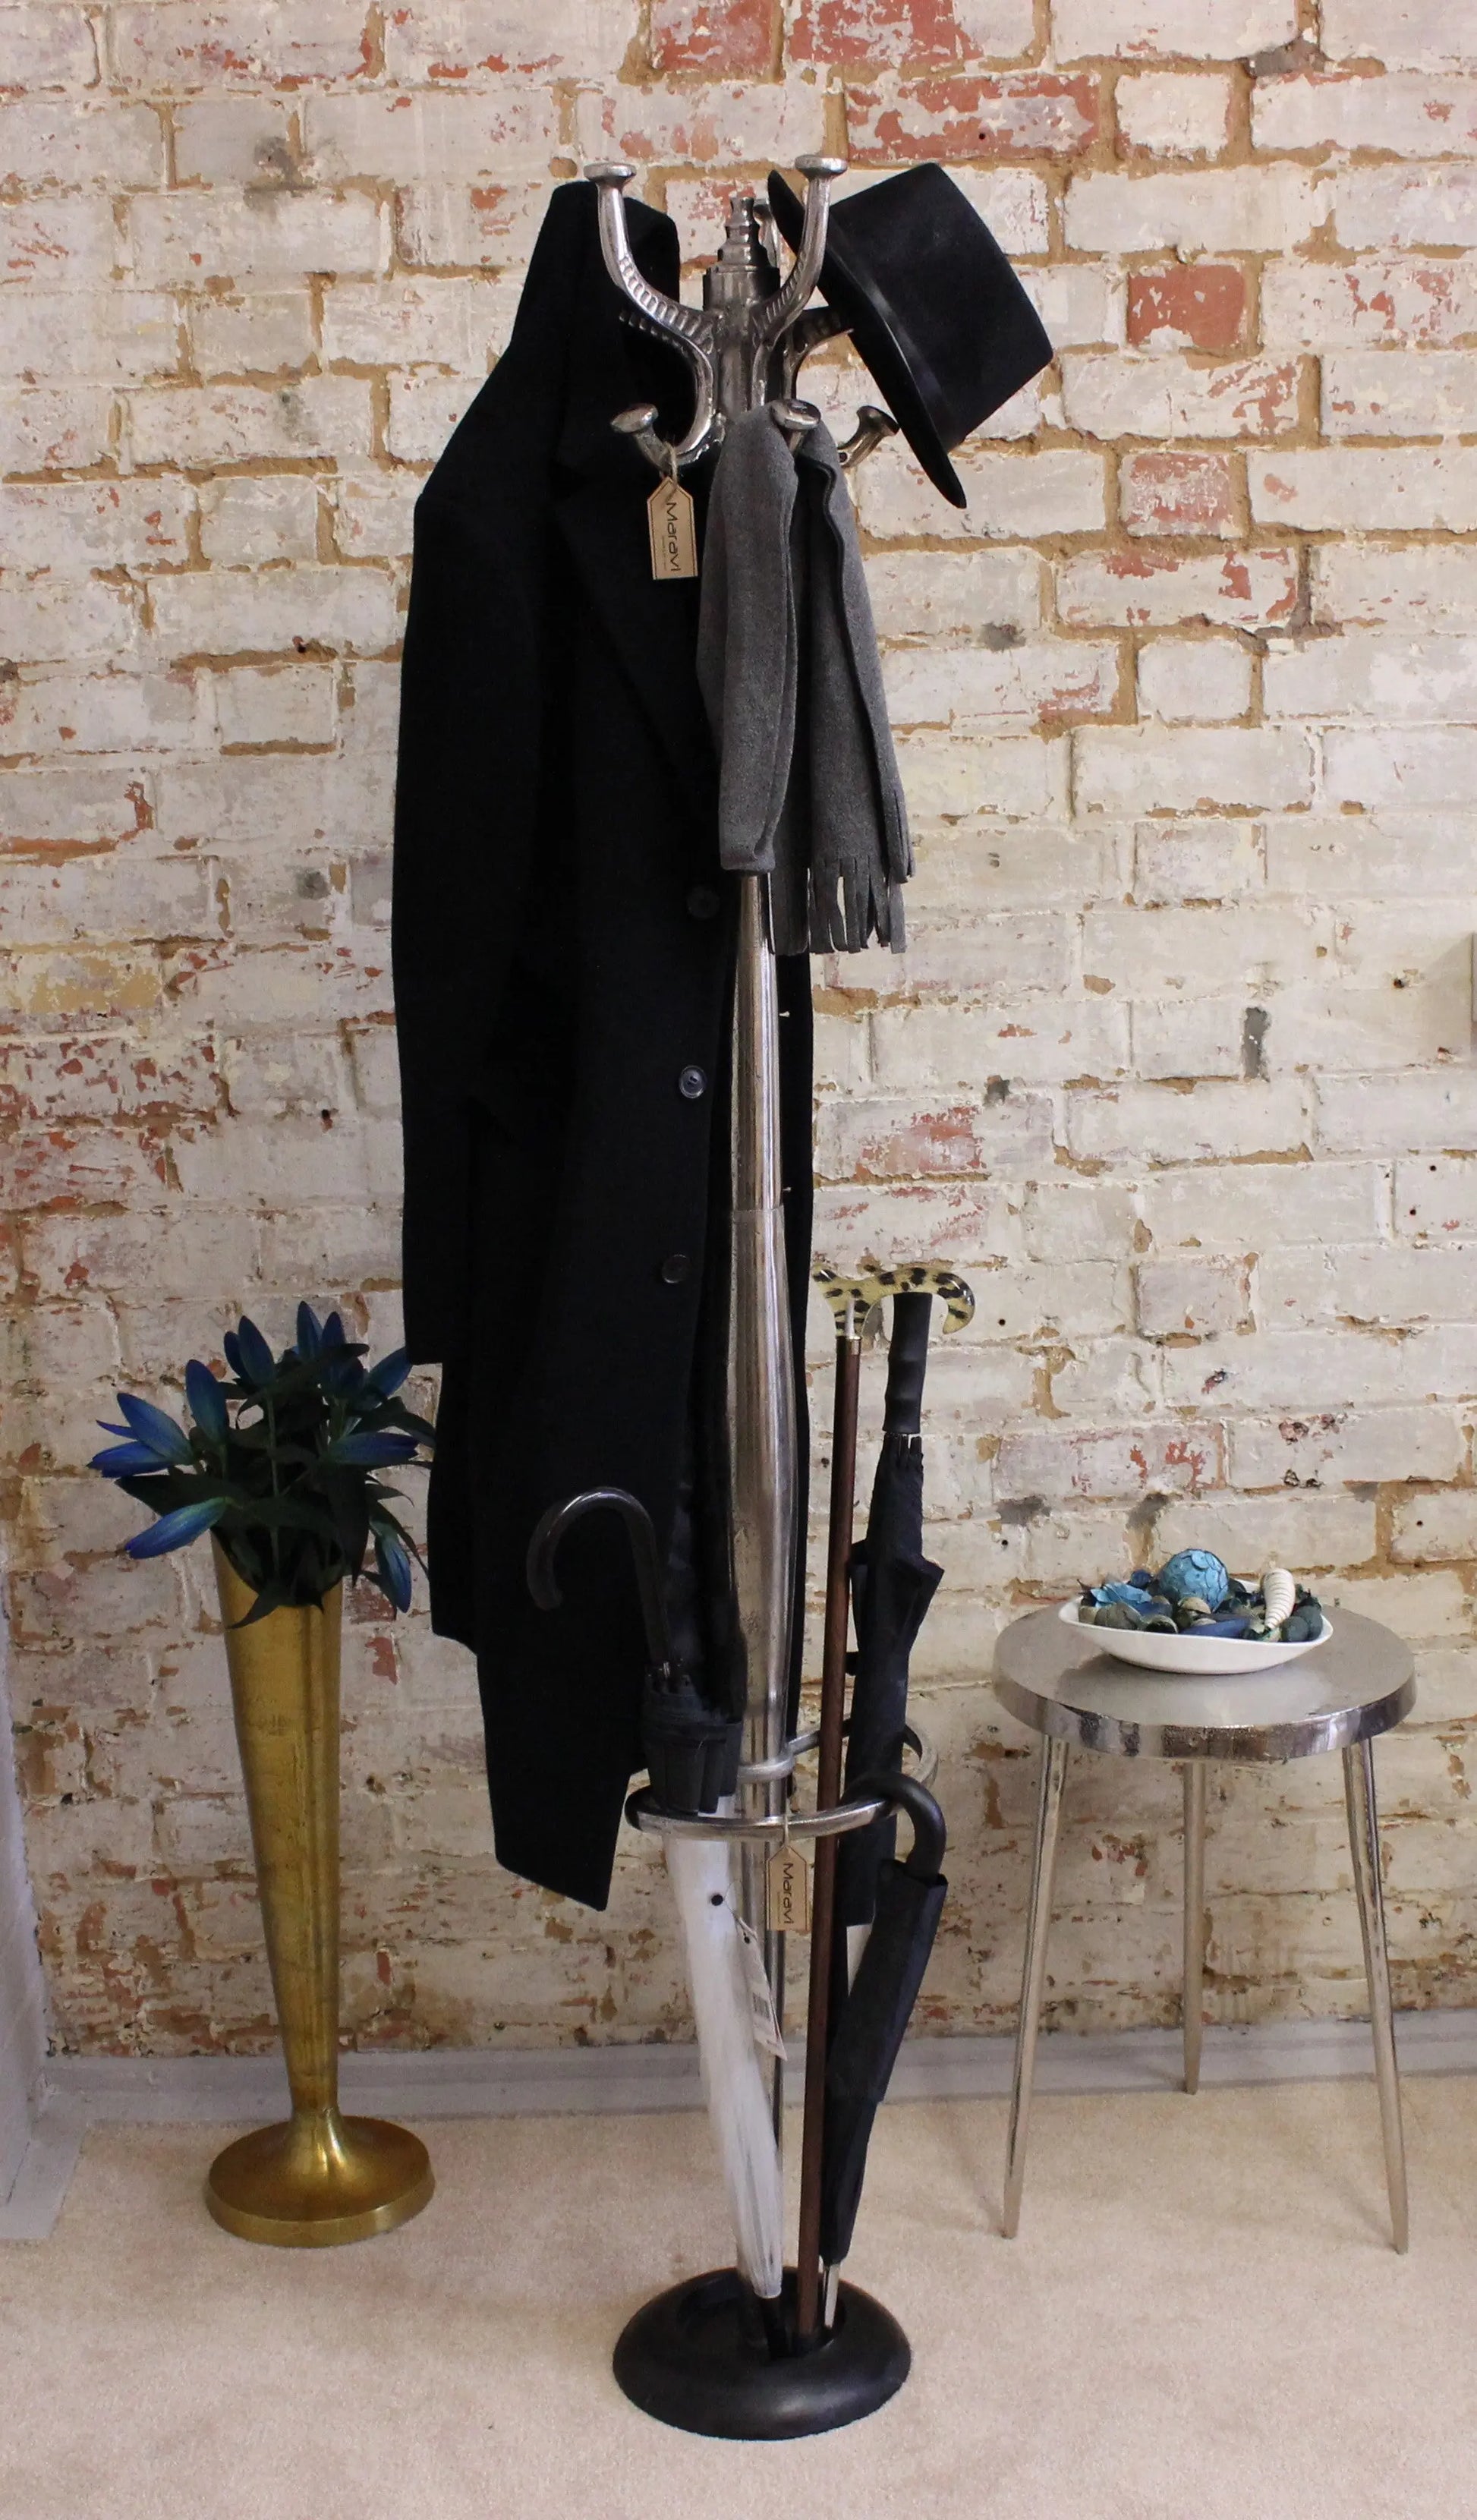 Ural Vintage Metal Coat Stand Umbrella Holder Full with Coats Hanging